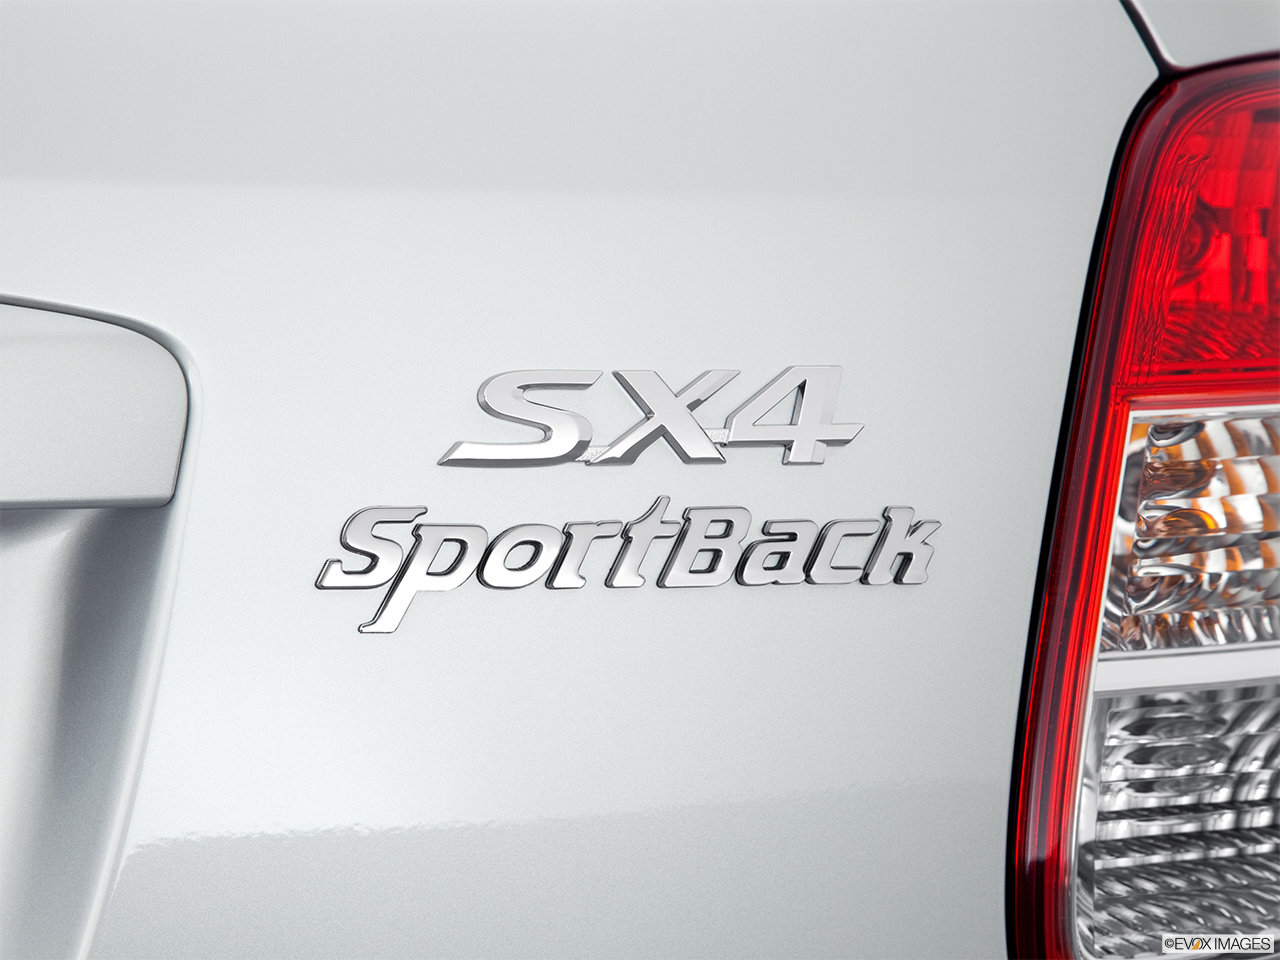 2011 Suzuki SX4 Sportback Technology Rear model badge/emblem 